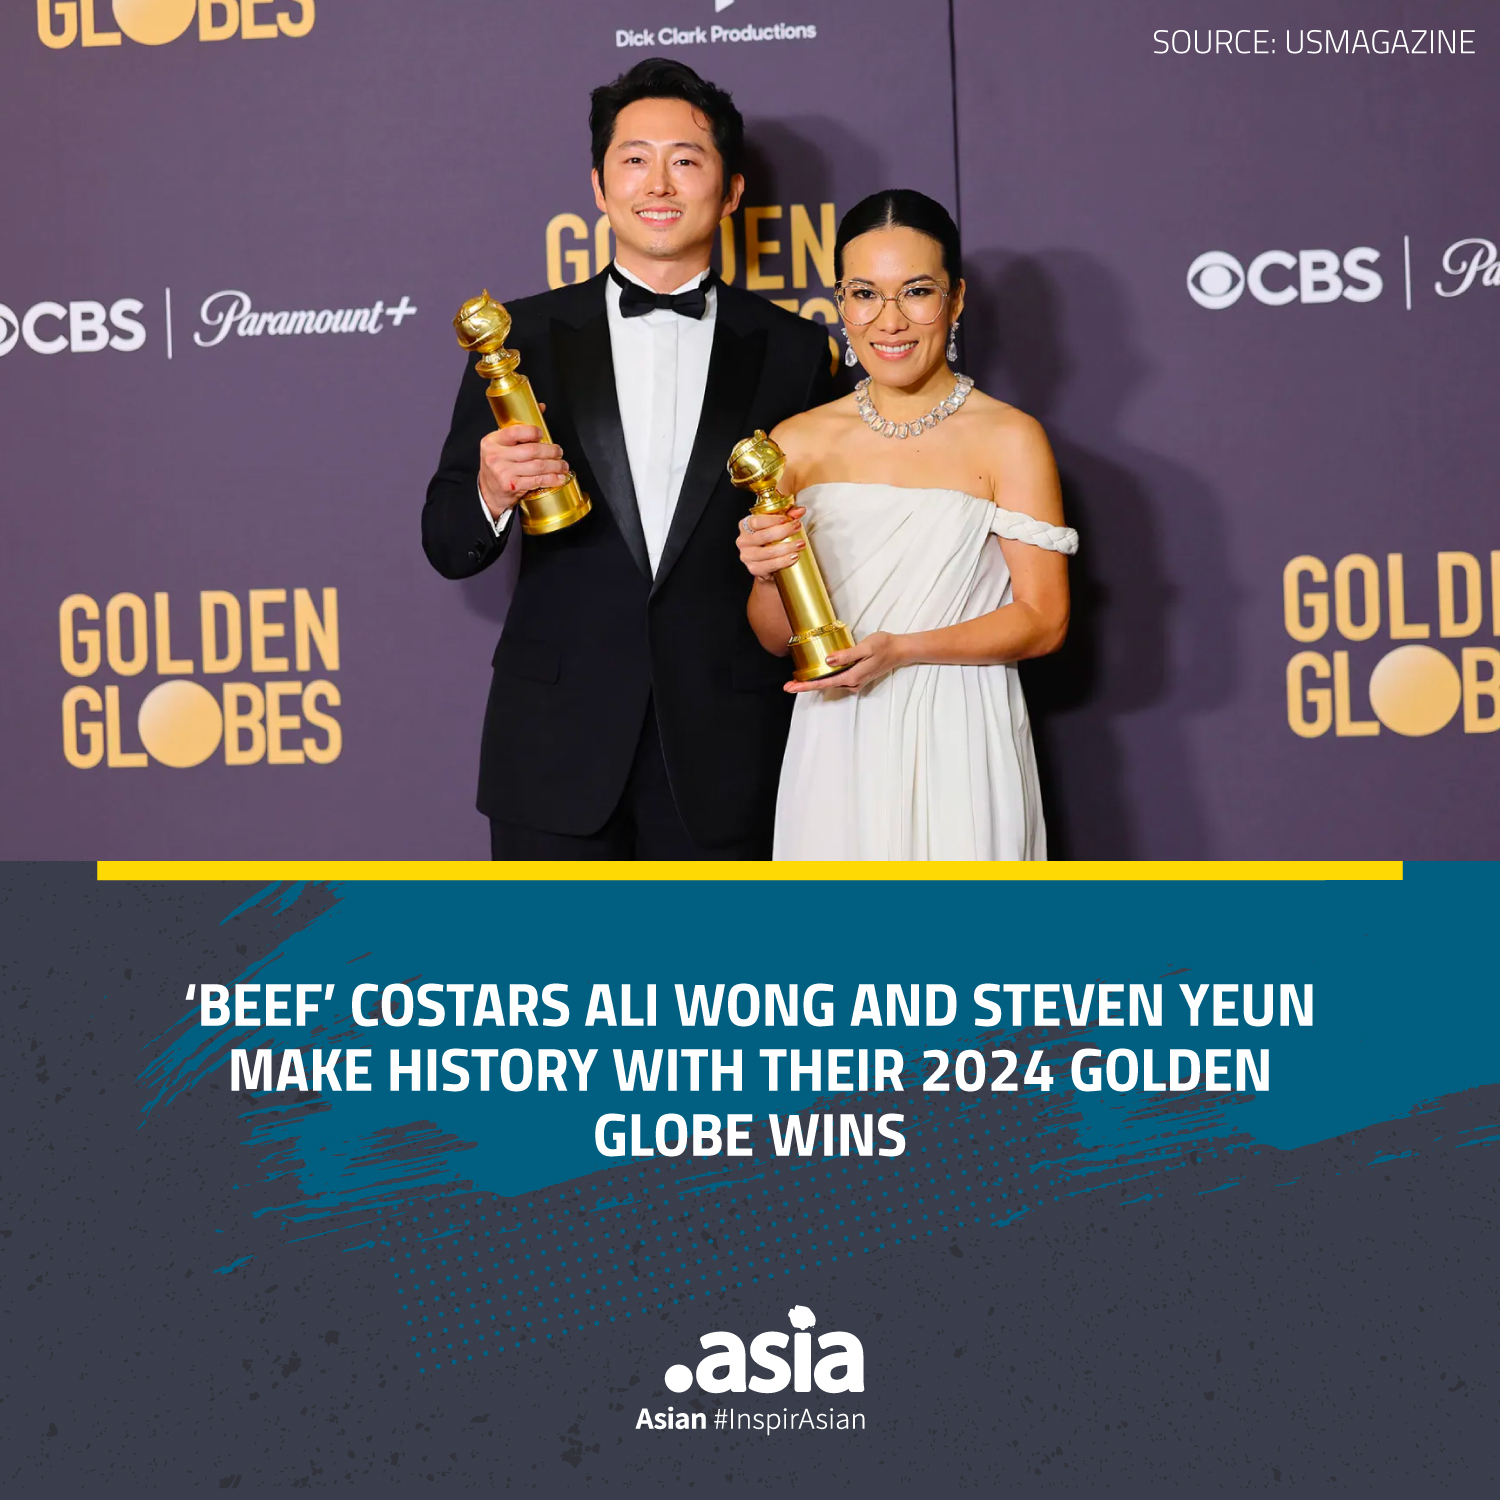 Image: Ali Wong and Steven Yeun, 2024 Golden Globe